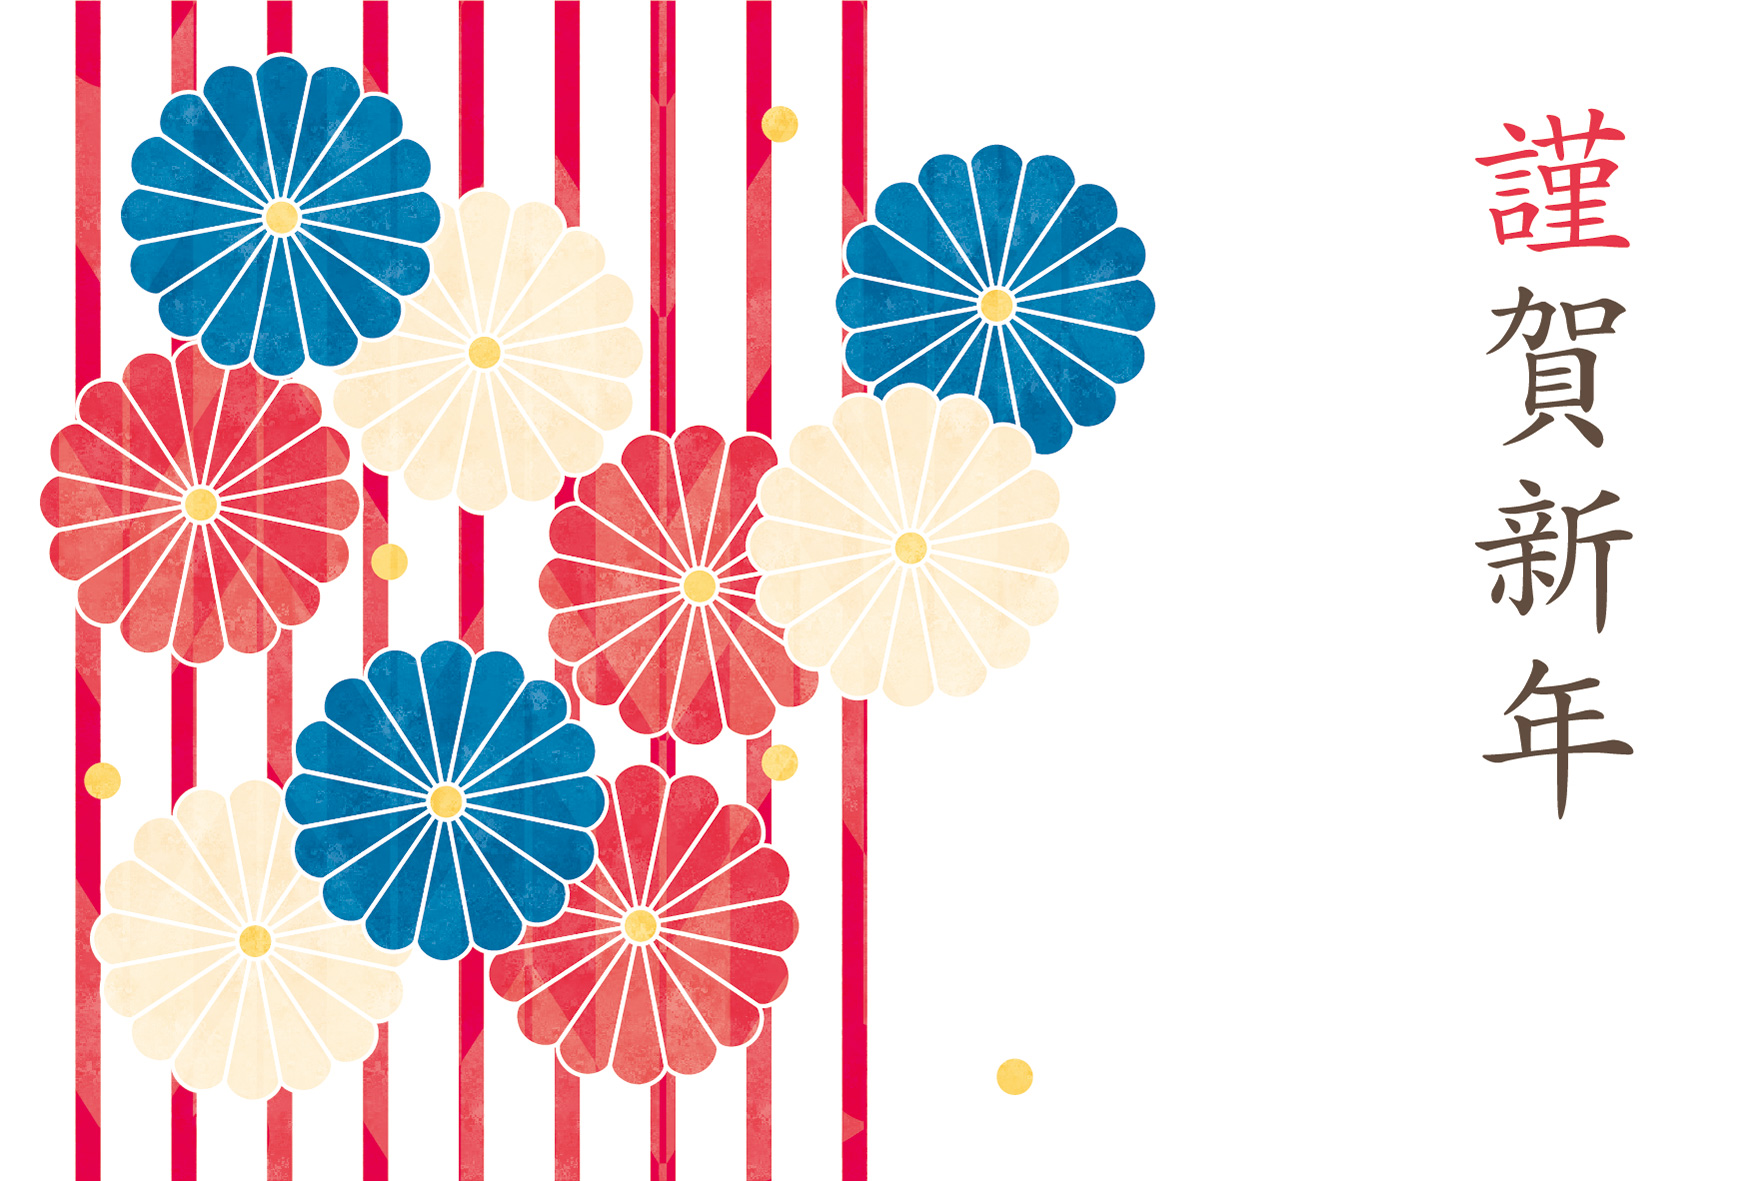 年賀状 寅年 三色の菊の花とストライプ柄のデザイン 年賀状22無料イラスト素材集